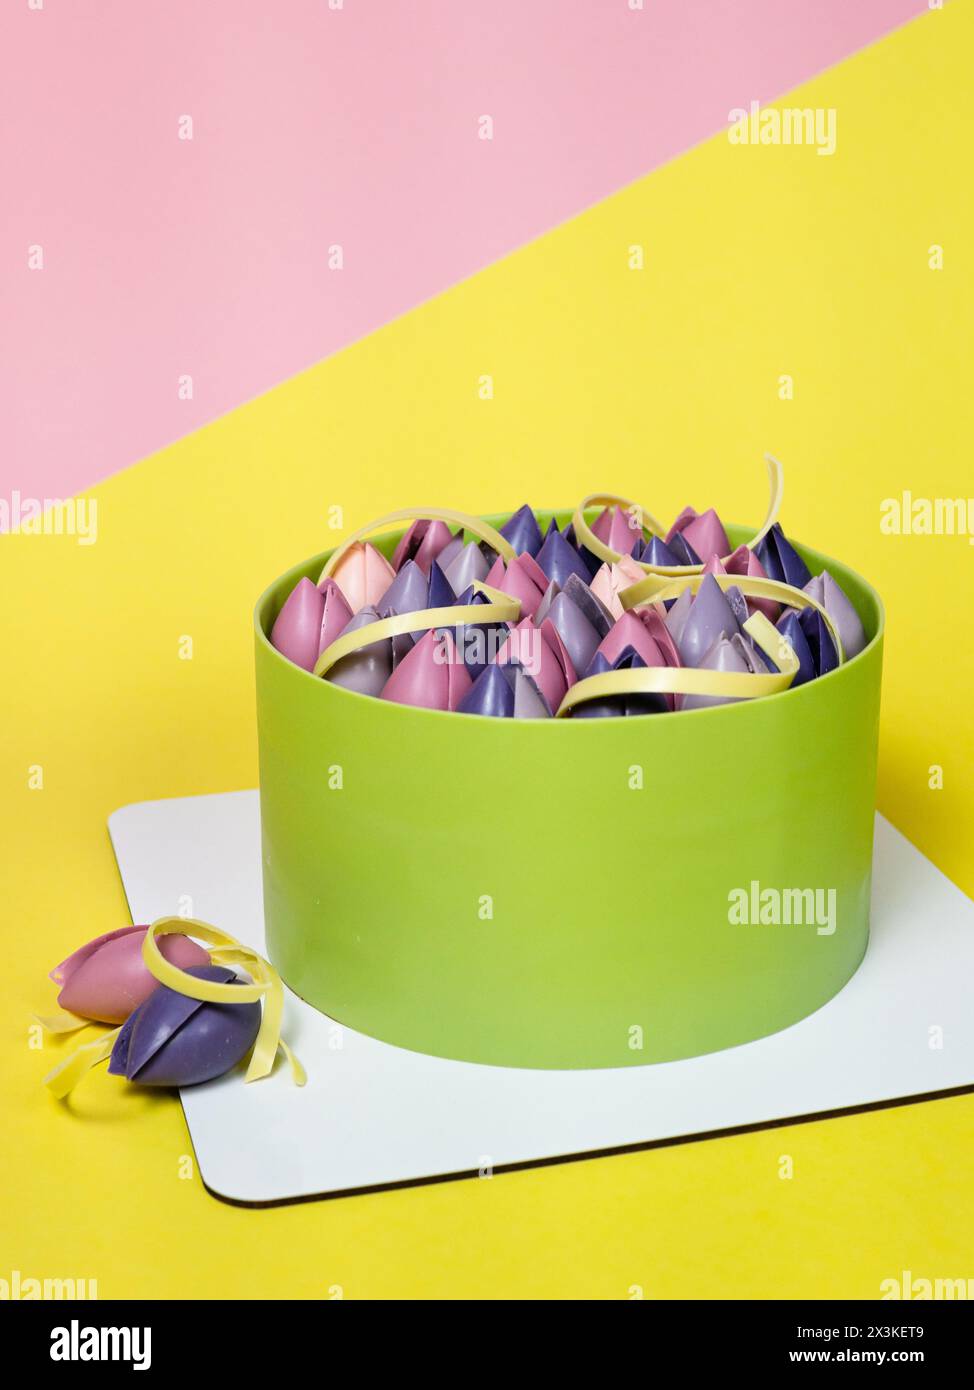 Nahaufnahme von Moussekuchen mit Schokoladentulpe, Nahaufnahme, gelber und rosa Hintergrund. Back- und Süßwarenkonzept. Französisches Dessert Stockfoto